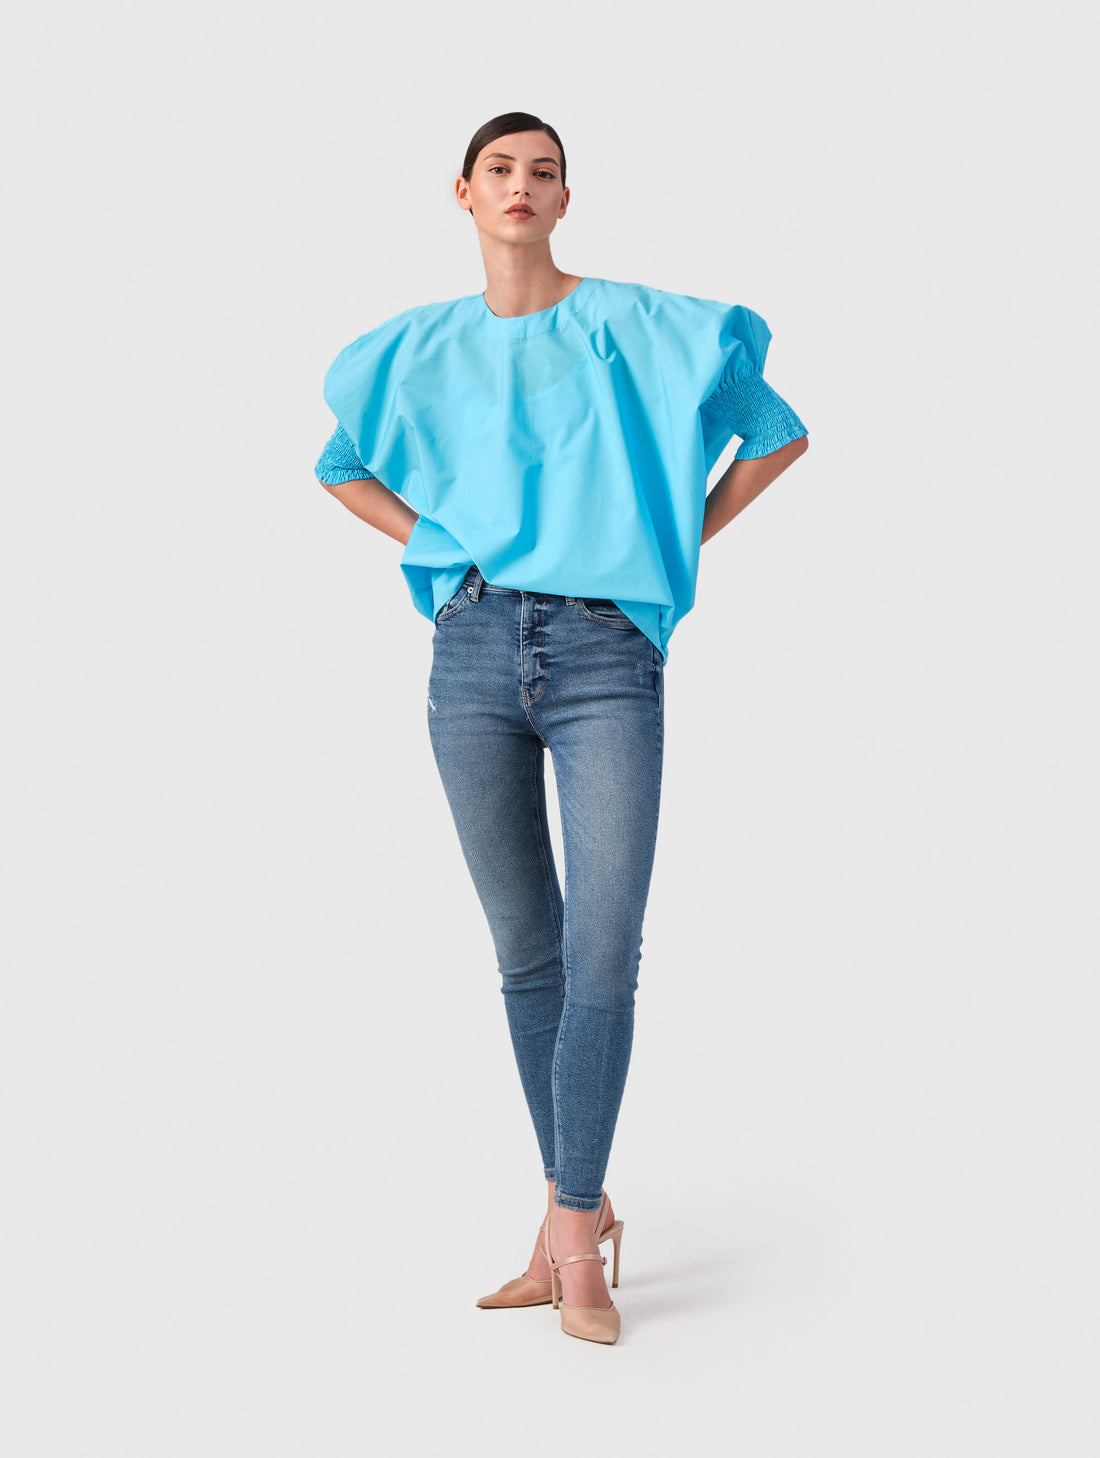 Ildiko - Short-sleeved cotton blouse